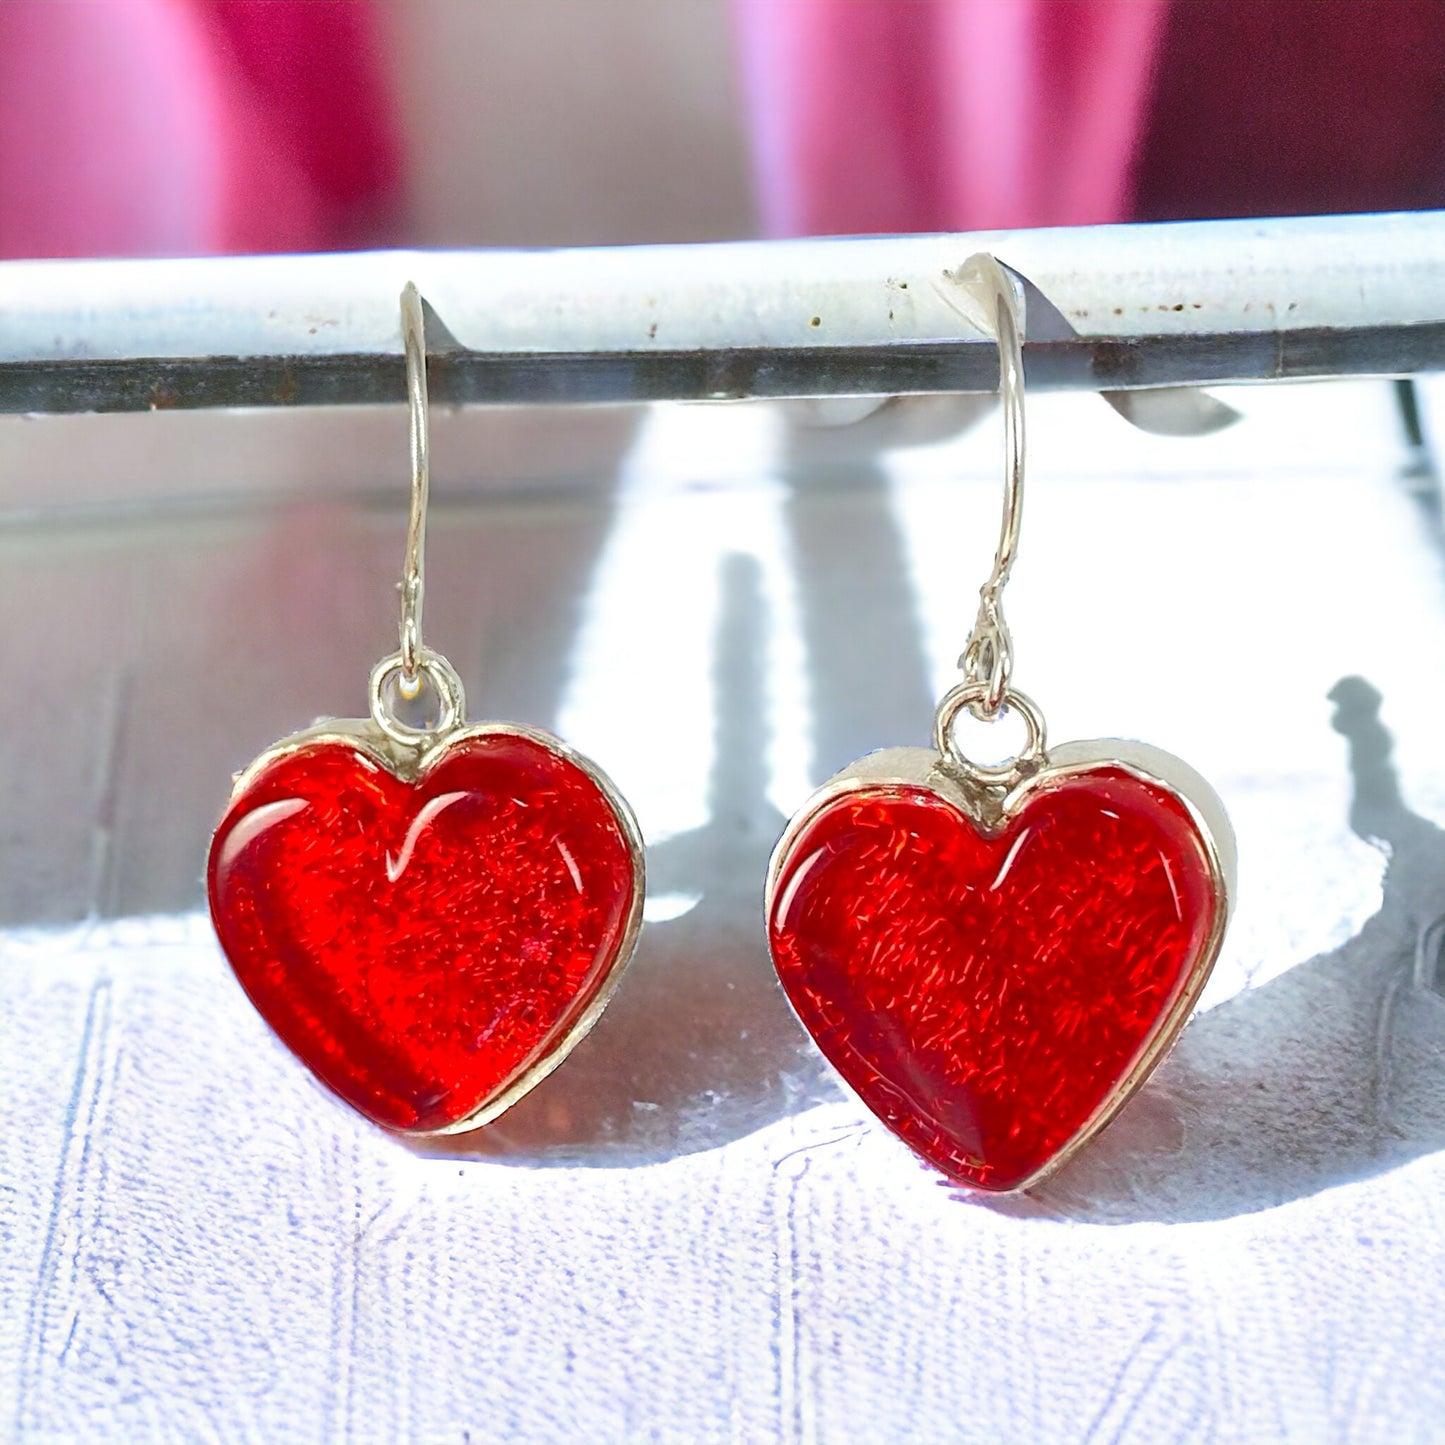 Heart Earrings in Cherry